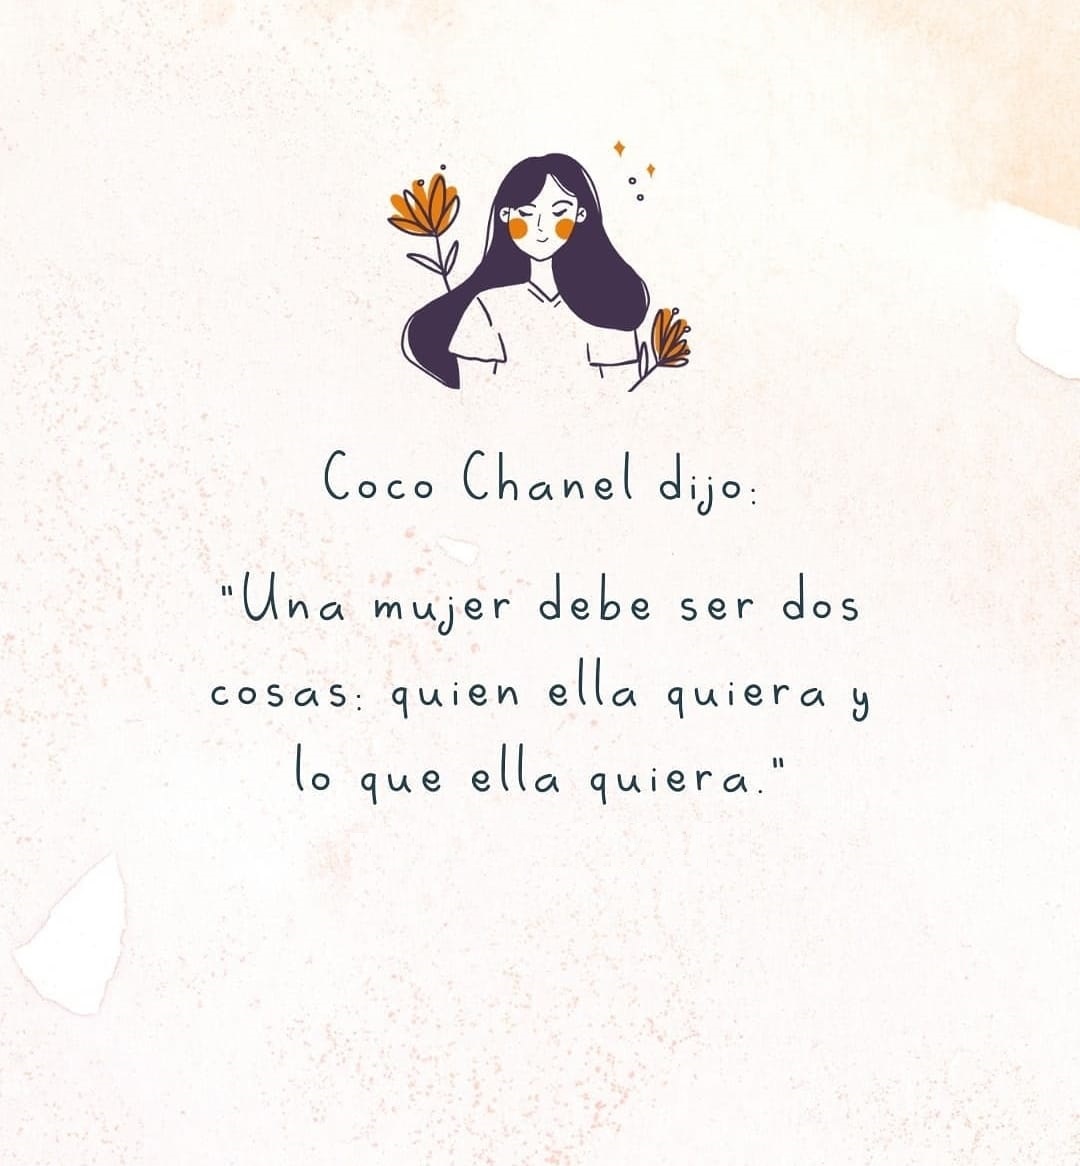 Frase celebre de Coco Chanel dijo: Una mujer debe ser dos cosas: